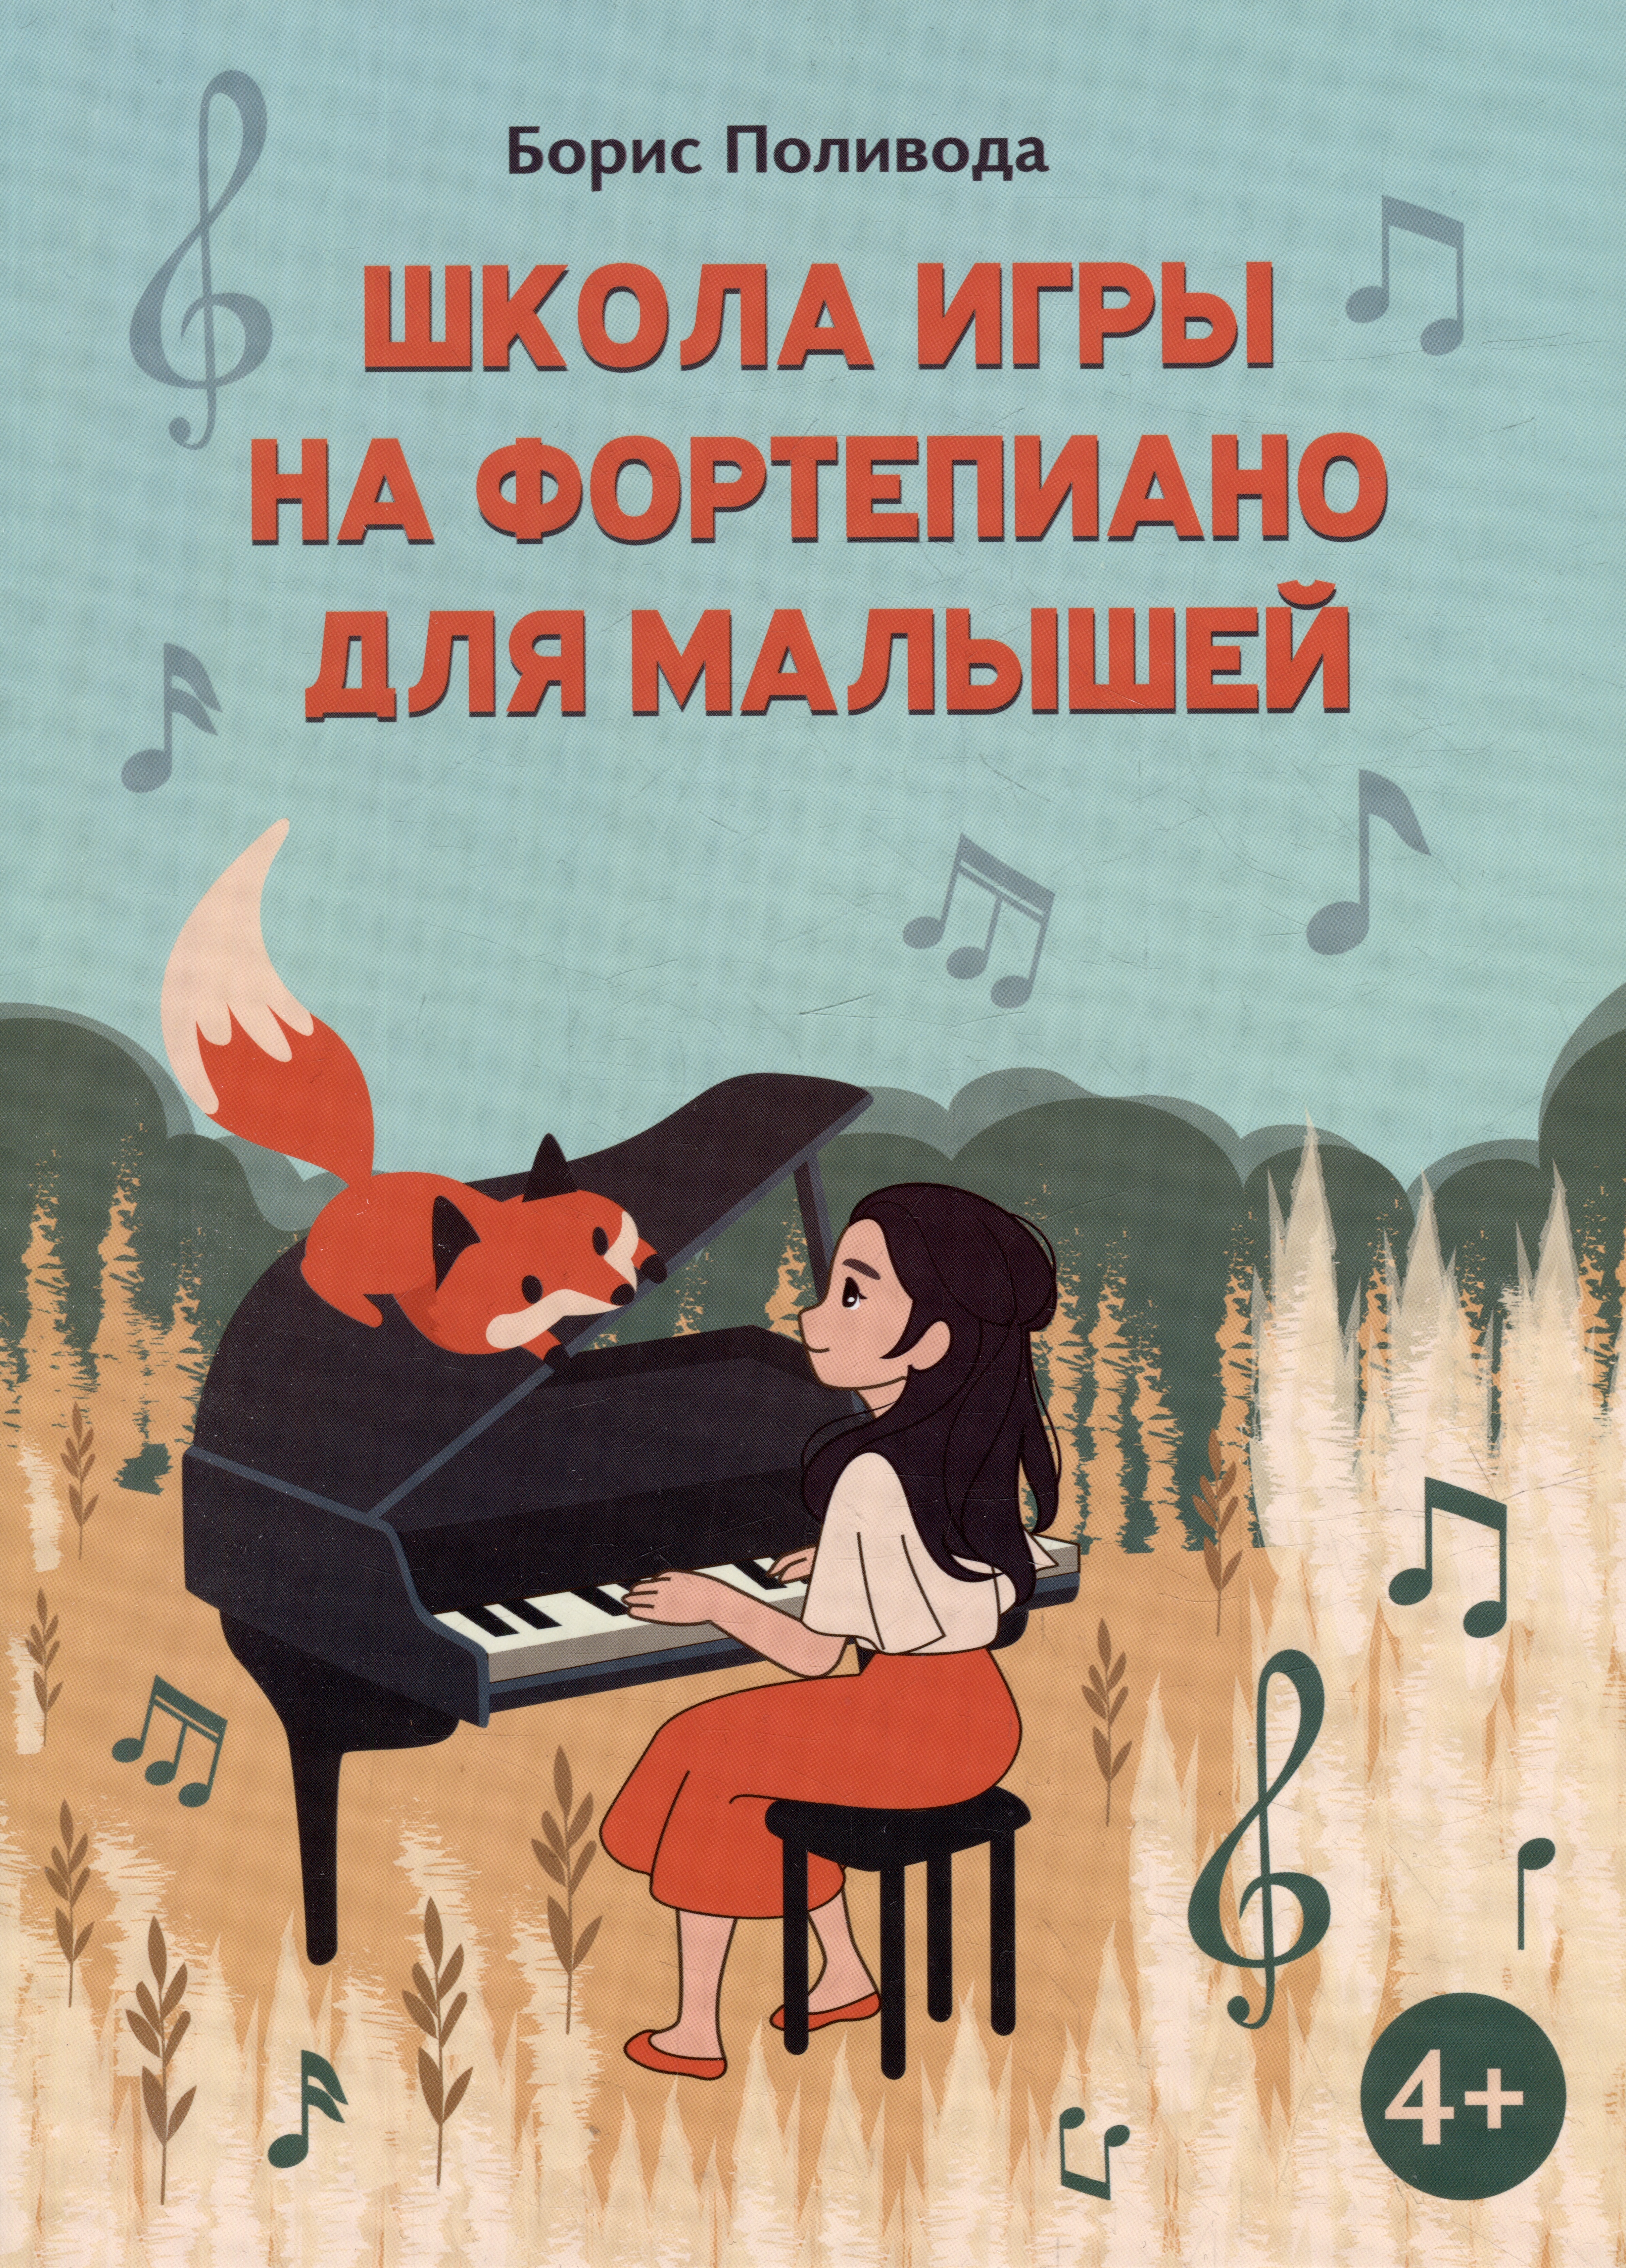 поливода б а школа игры на фортепиано для малышей Поливода Борис Андреевич Школа игры на фортепиано для малышей